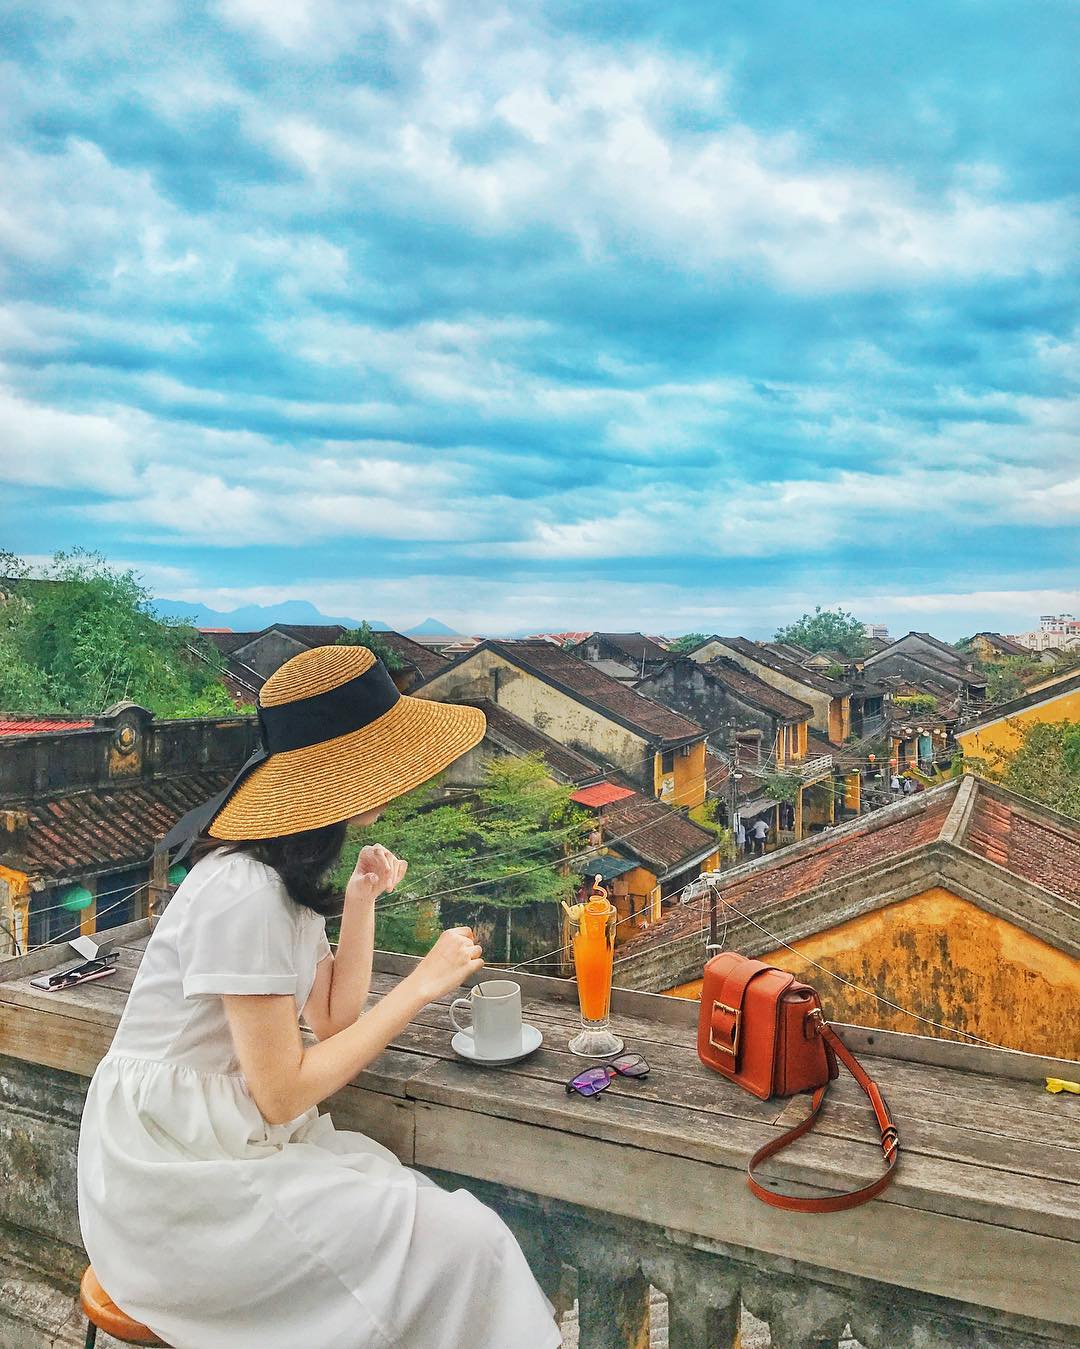 Đại diện Việt Nam góp mặt trong 25 thành phố đẹp nhất thế giới - 2